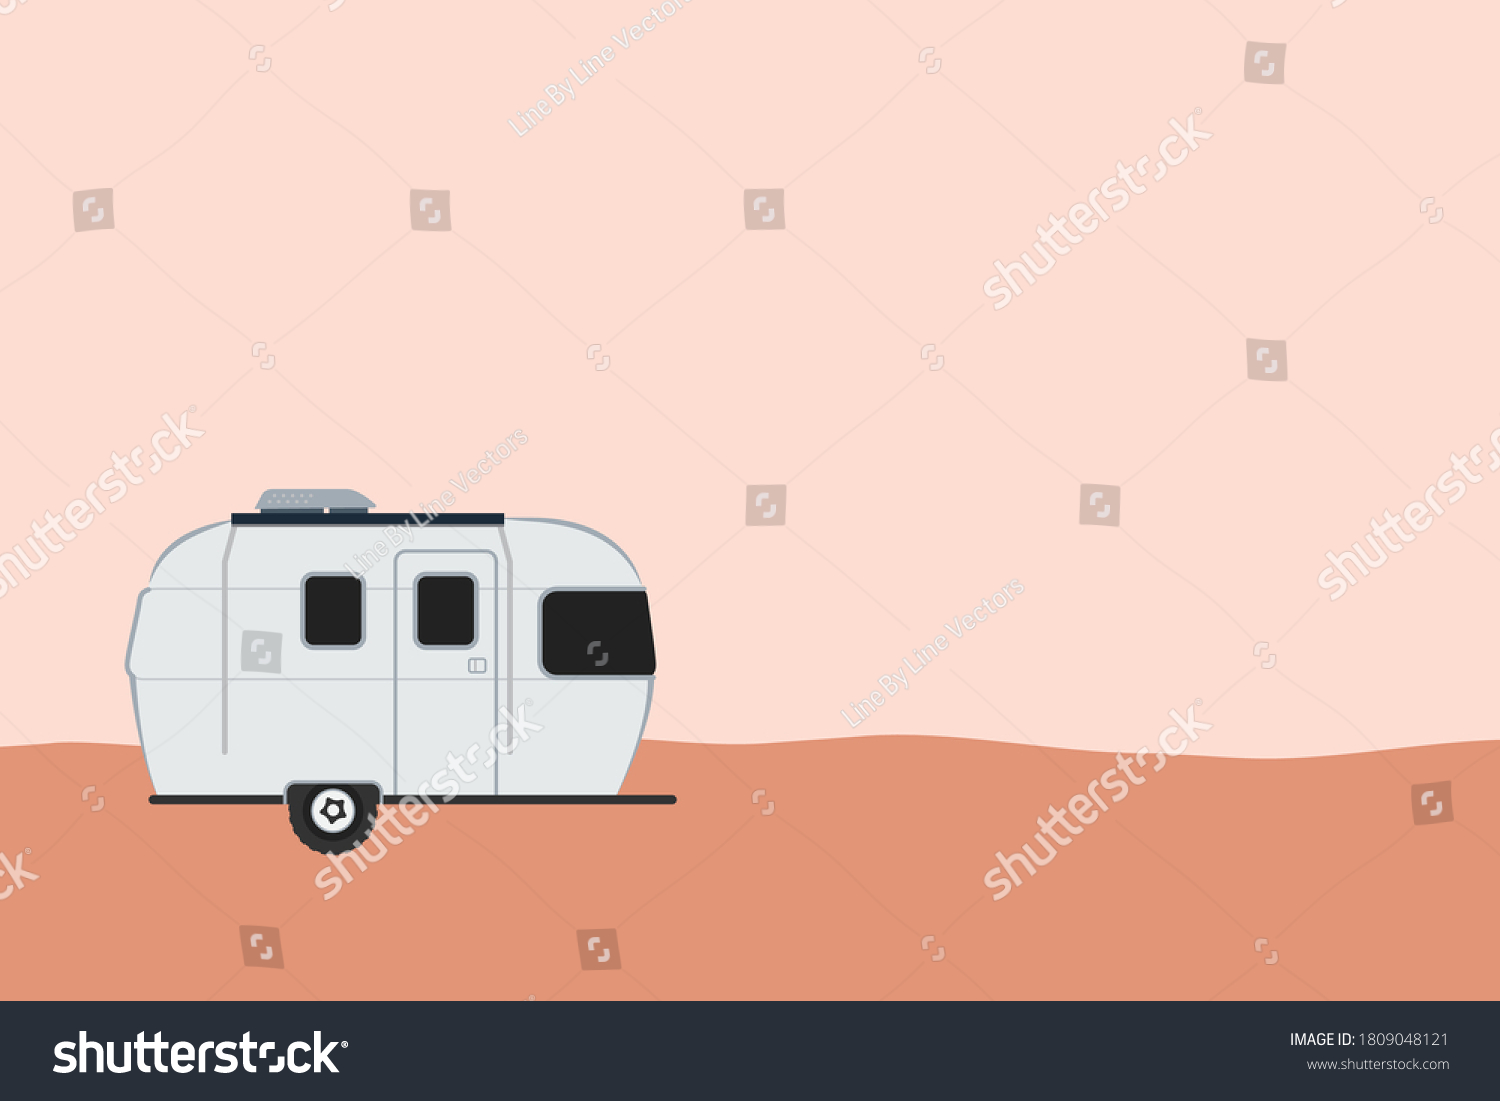 SVG of Travel Trailer, Camper Van, Motor Home, Airstream, Travel Car, Travel Camper, Trailer Camp, Camping Car, Car Camping, Caravan Vector Illustration Background svg